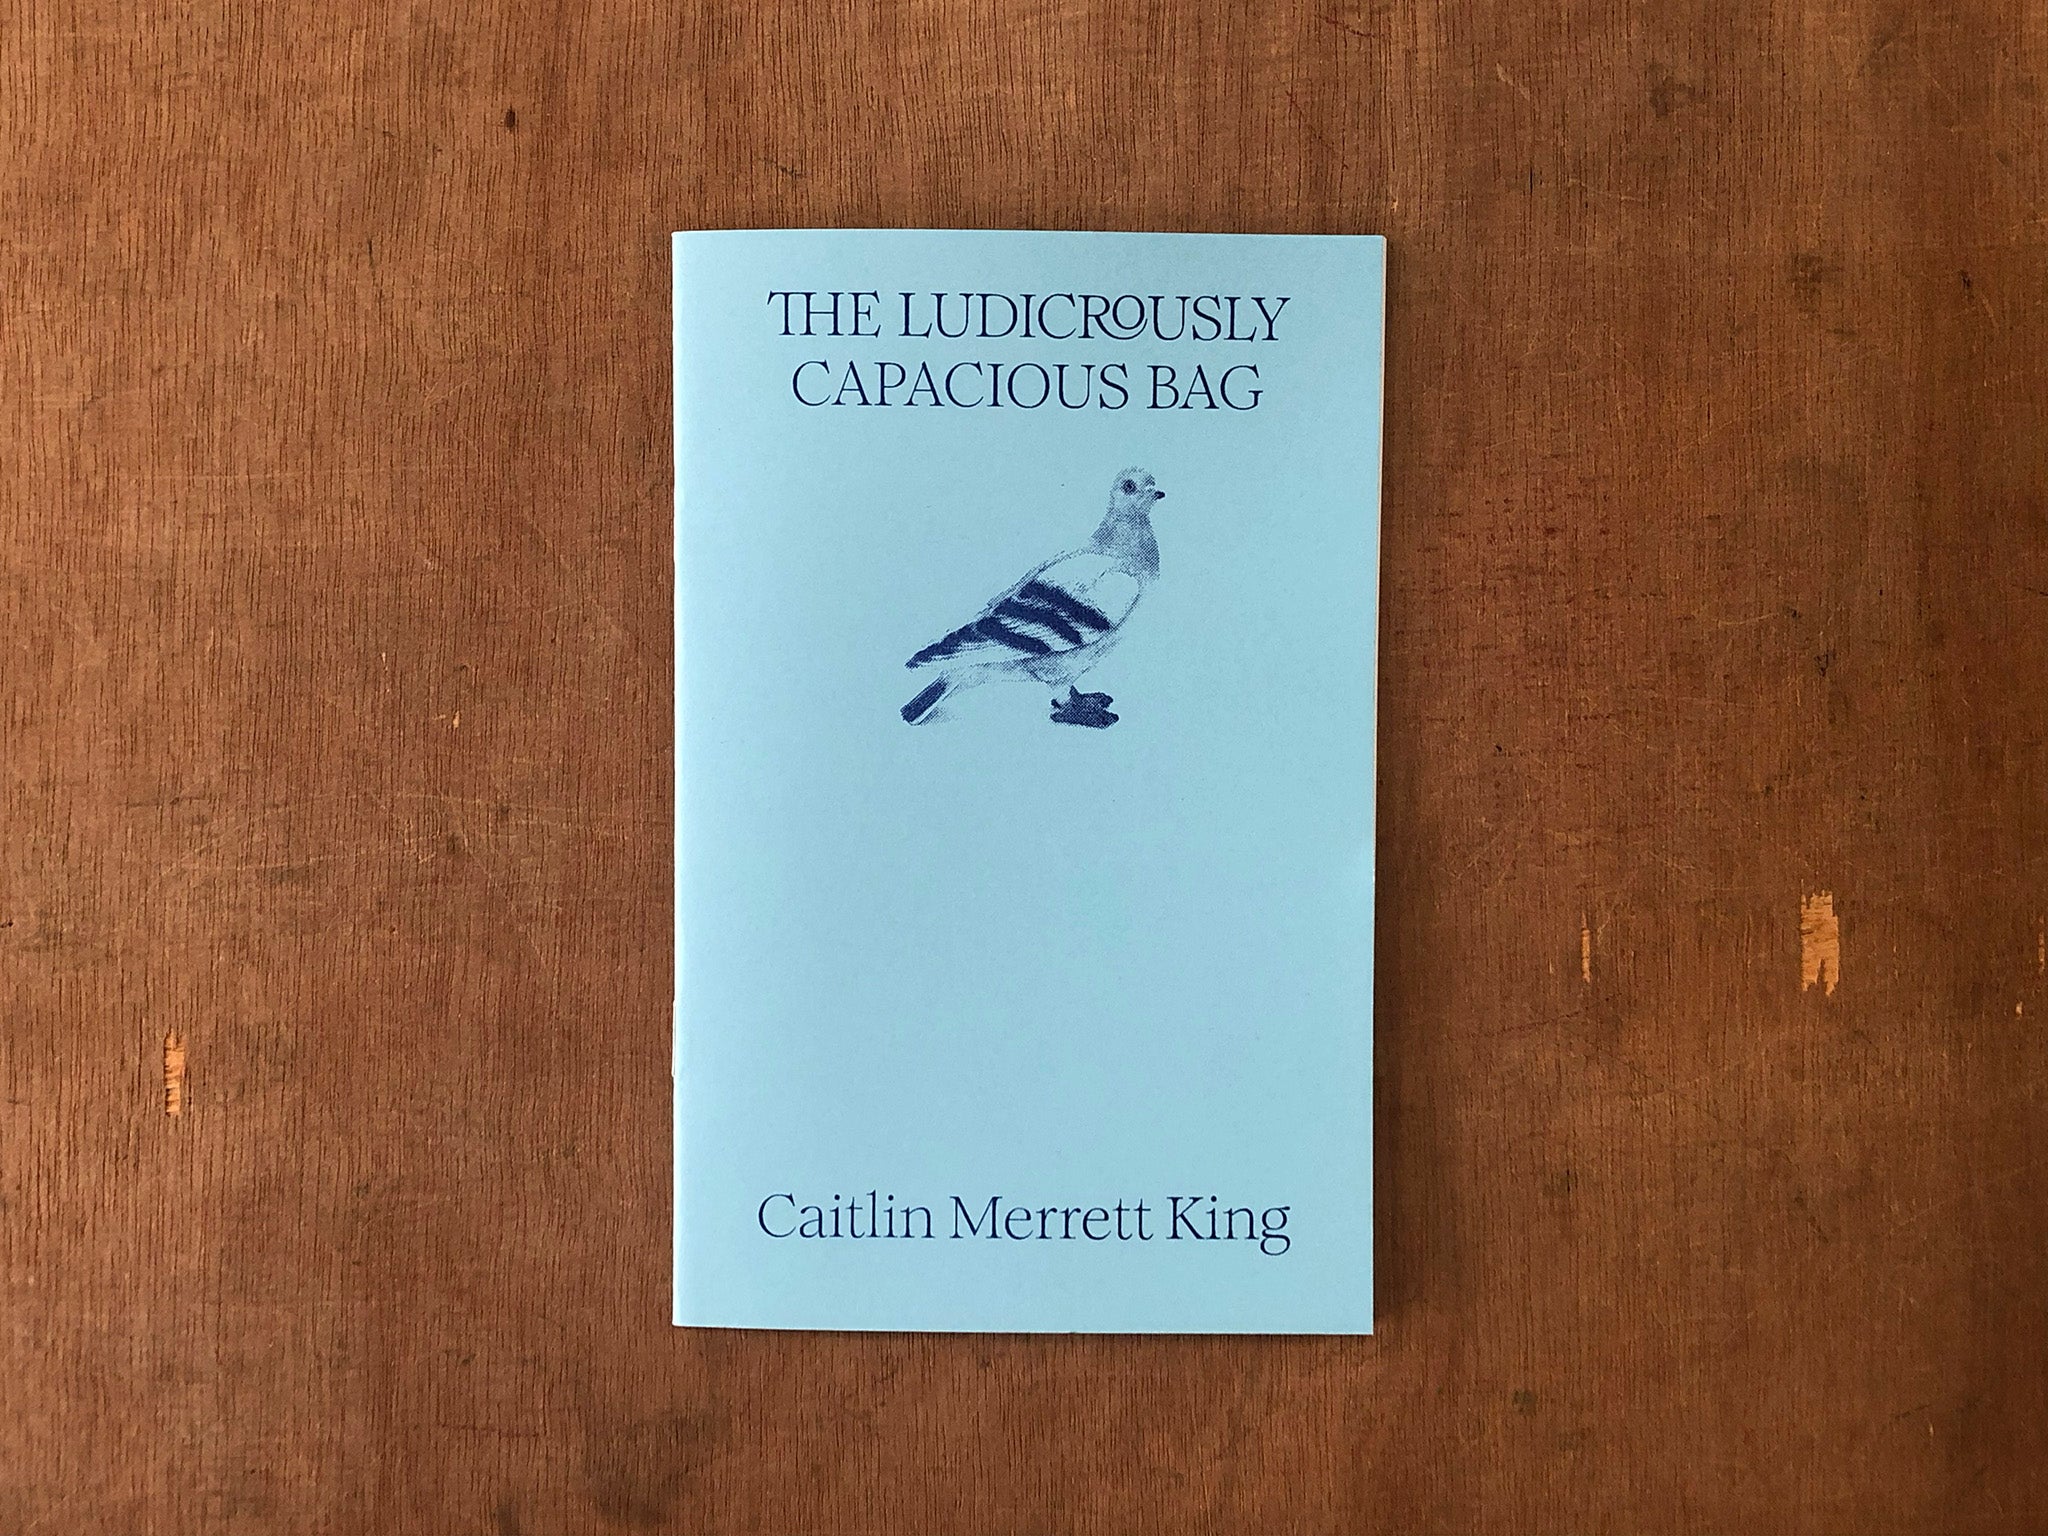 THE LUDICROUSLY CAPACIOUS BAG by Caitlin Merrett King